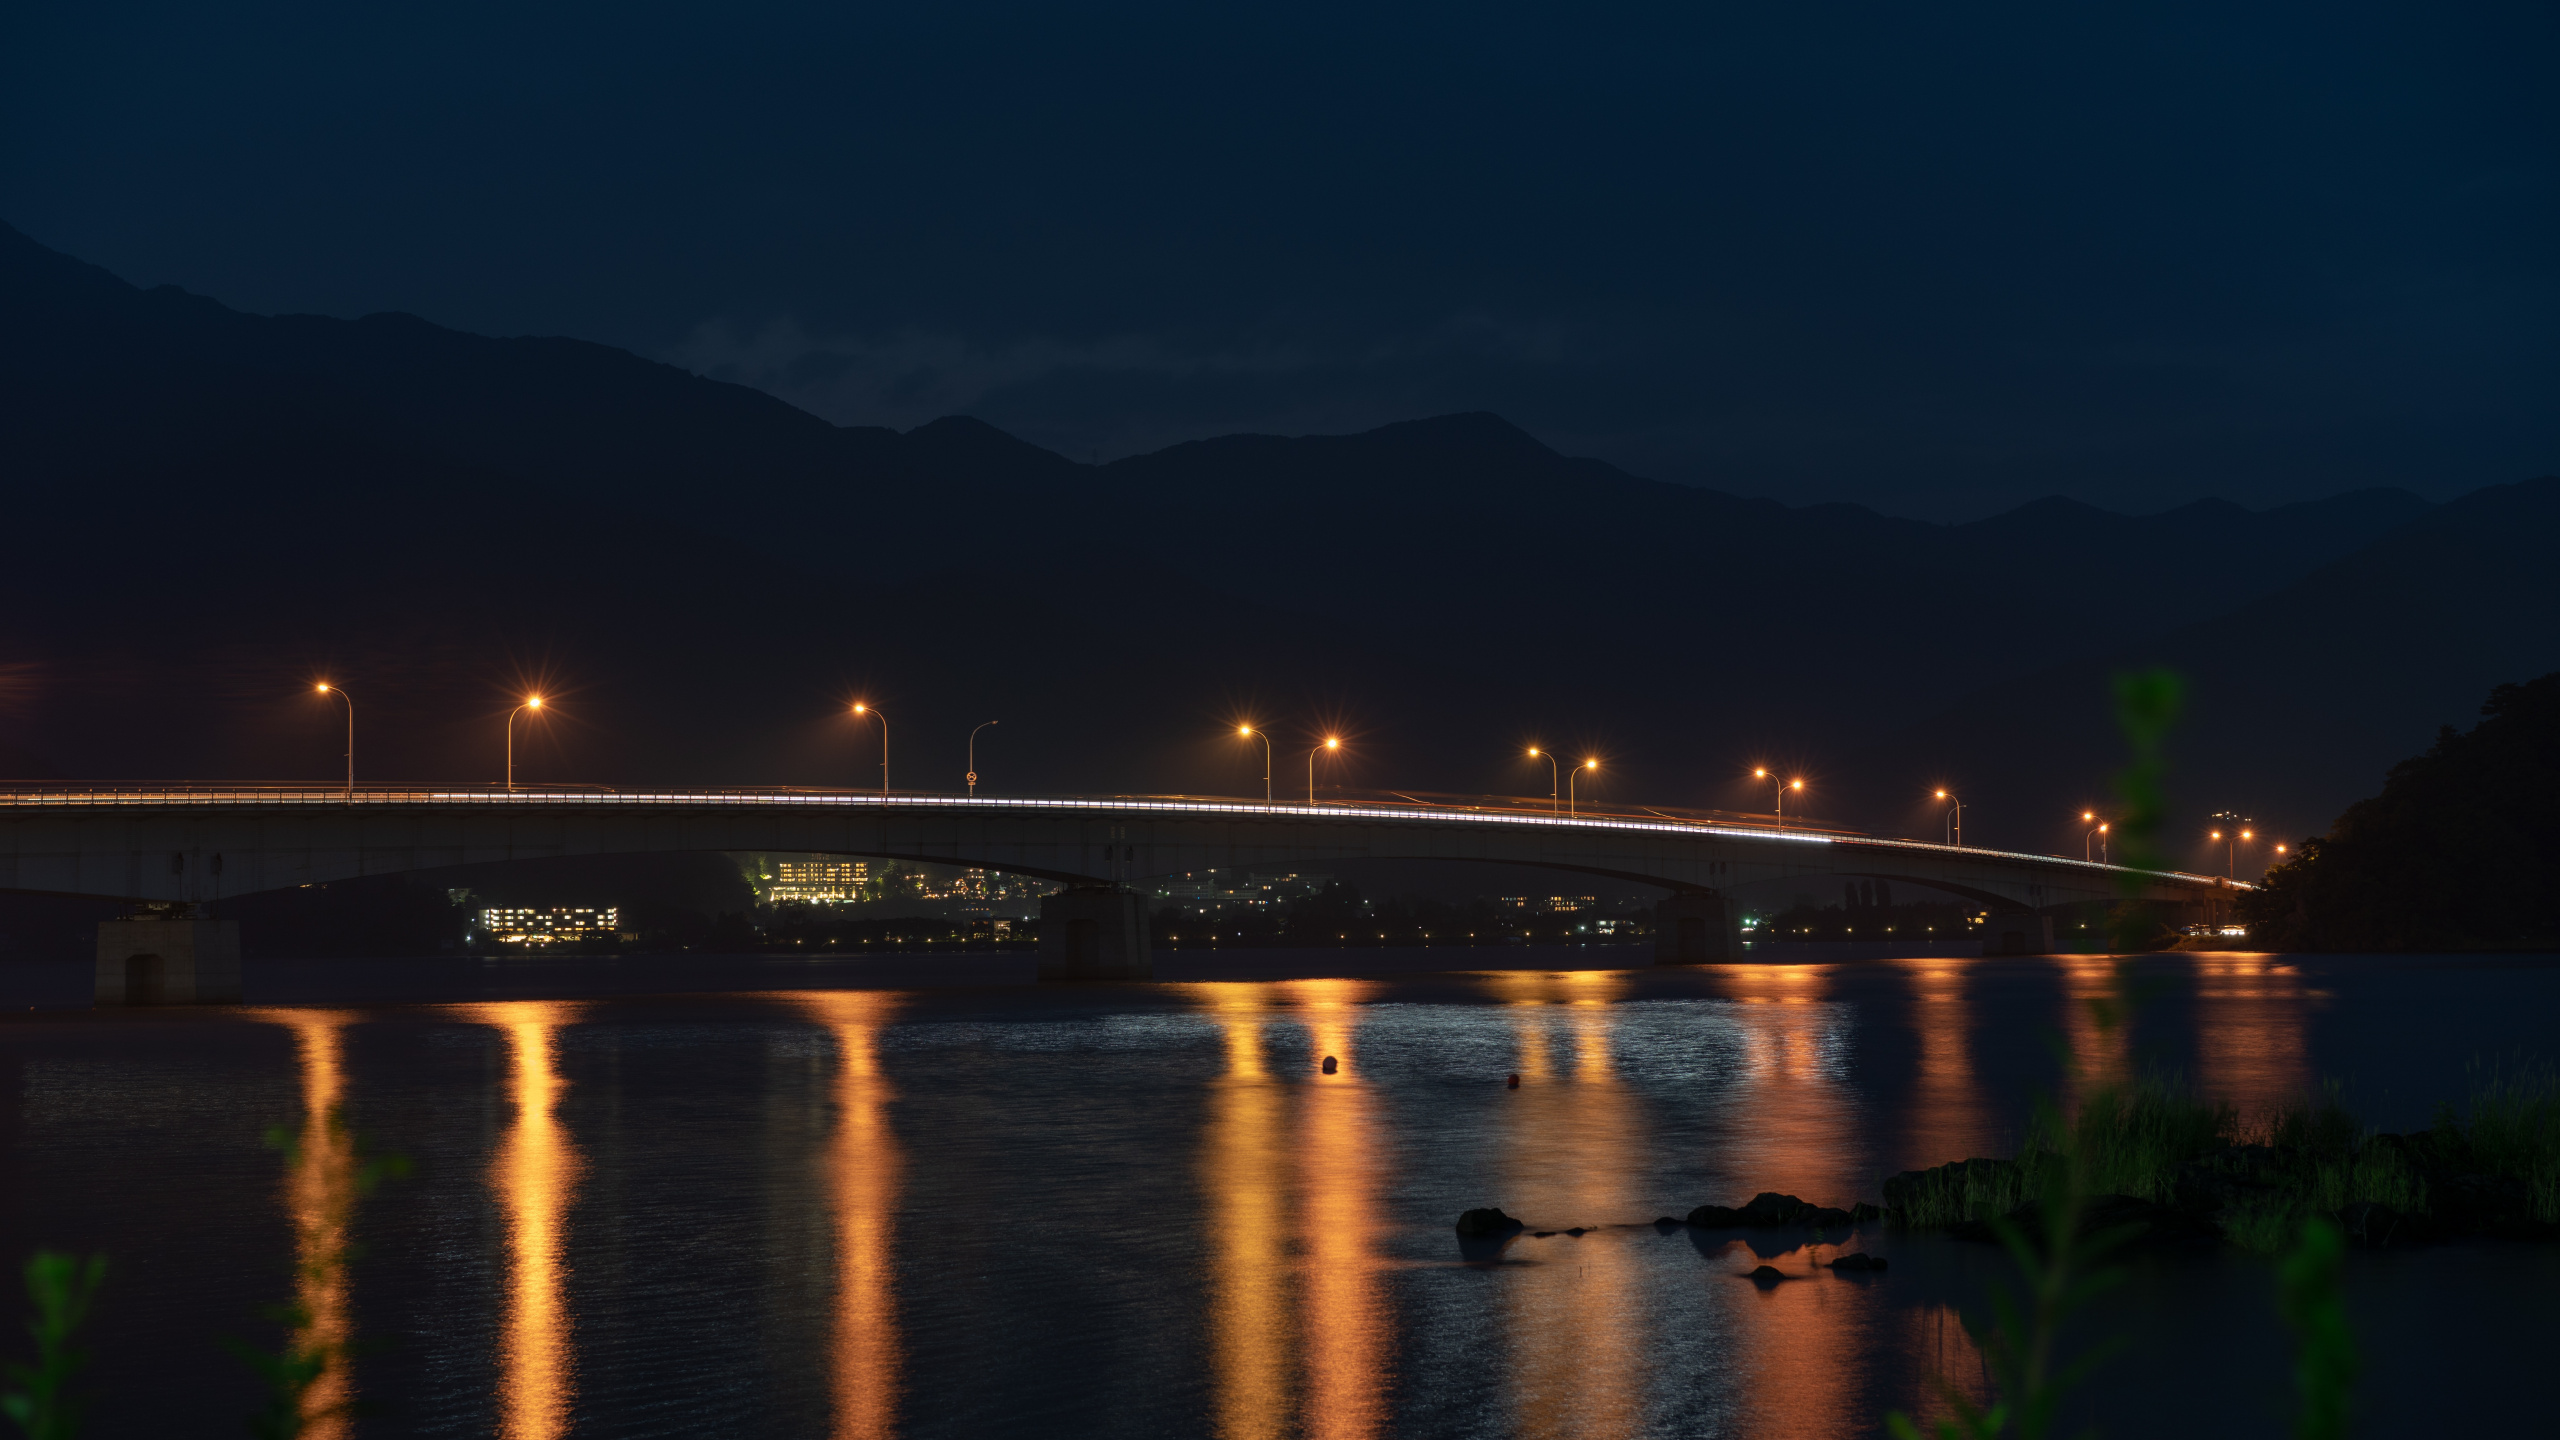 Beleuchtete Brücke Über Wasser Während Der Nacht Night. Wallpaper in 2560x1440 Resolution